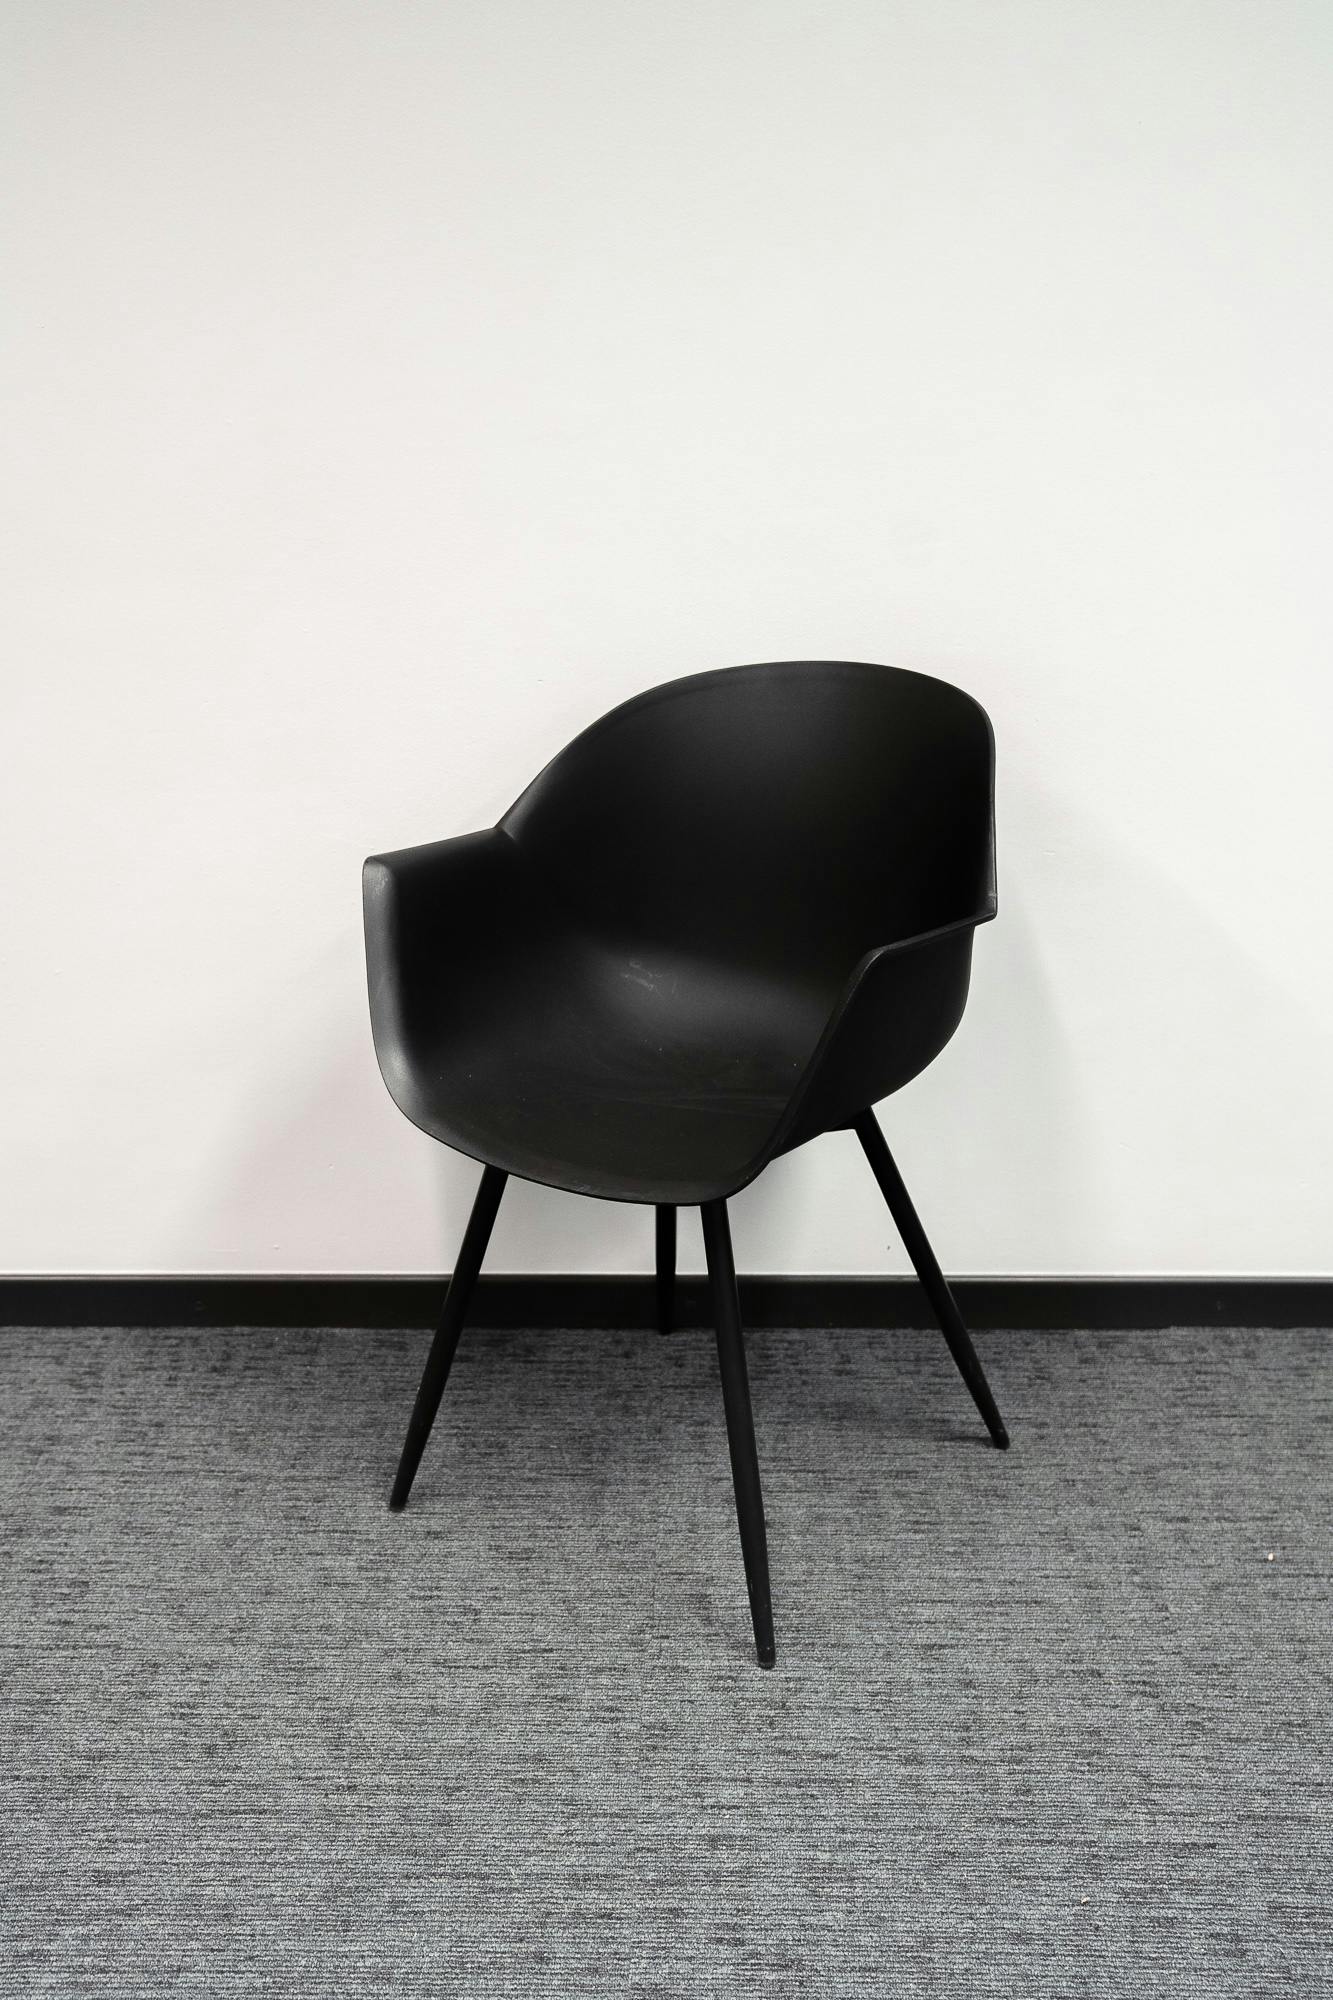 Zwarte designstoel - Tweedehands kwaliteit "Stoelen" - Relieve Furniture